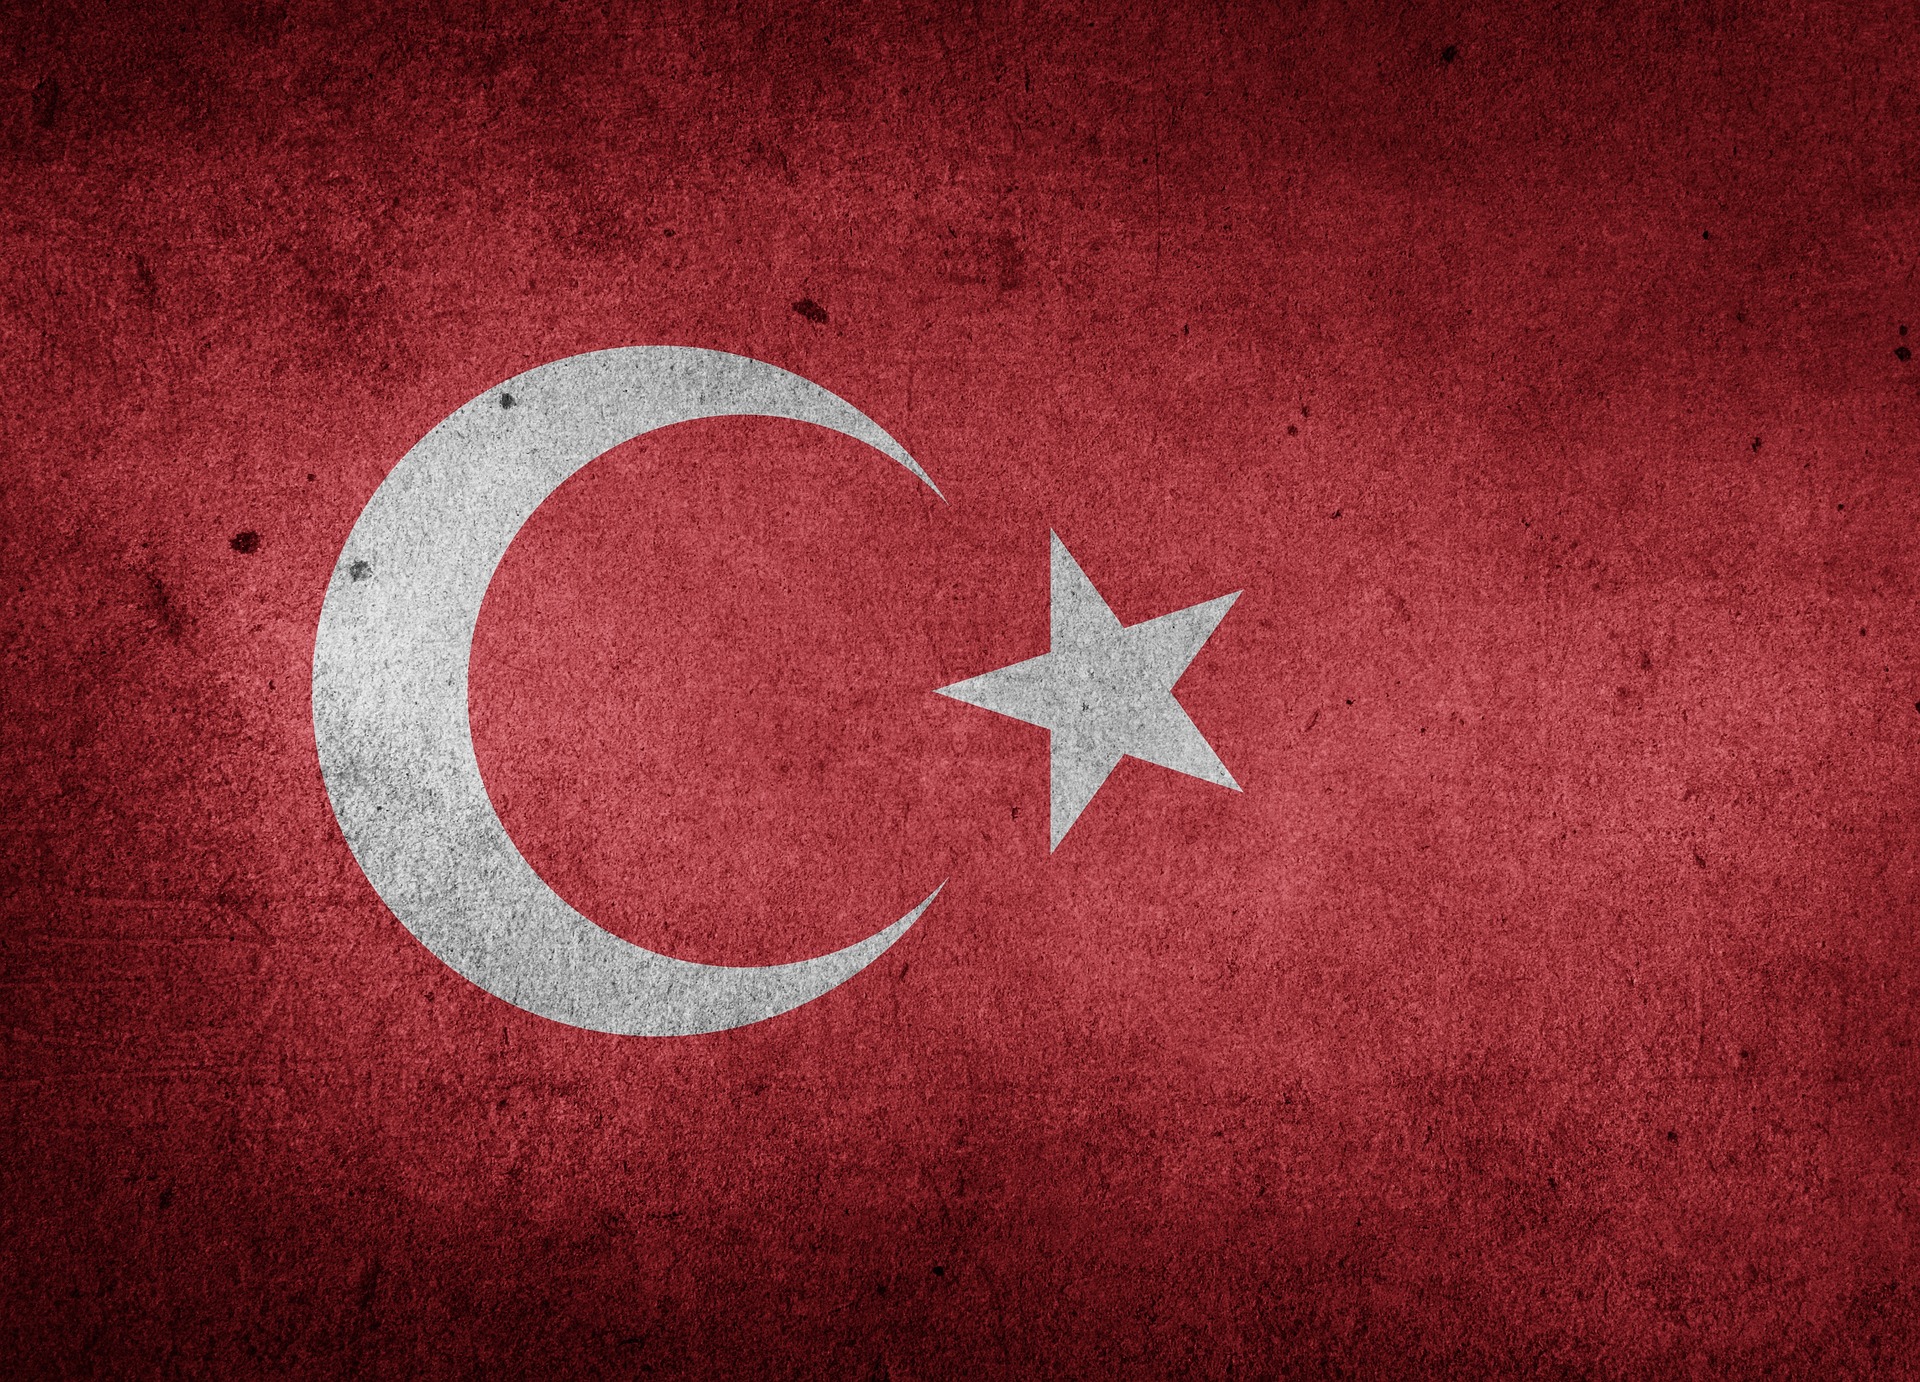 Za pokusem o převrat stojí klerik Gülen, nemám o tom pochyby, říká turecký novinář Emre Kızılkaya